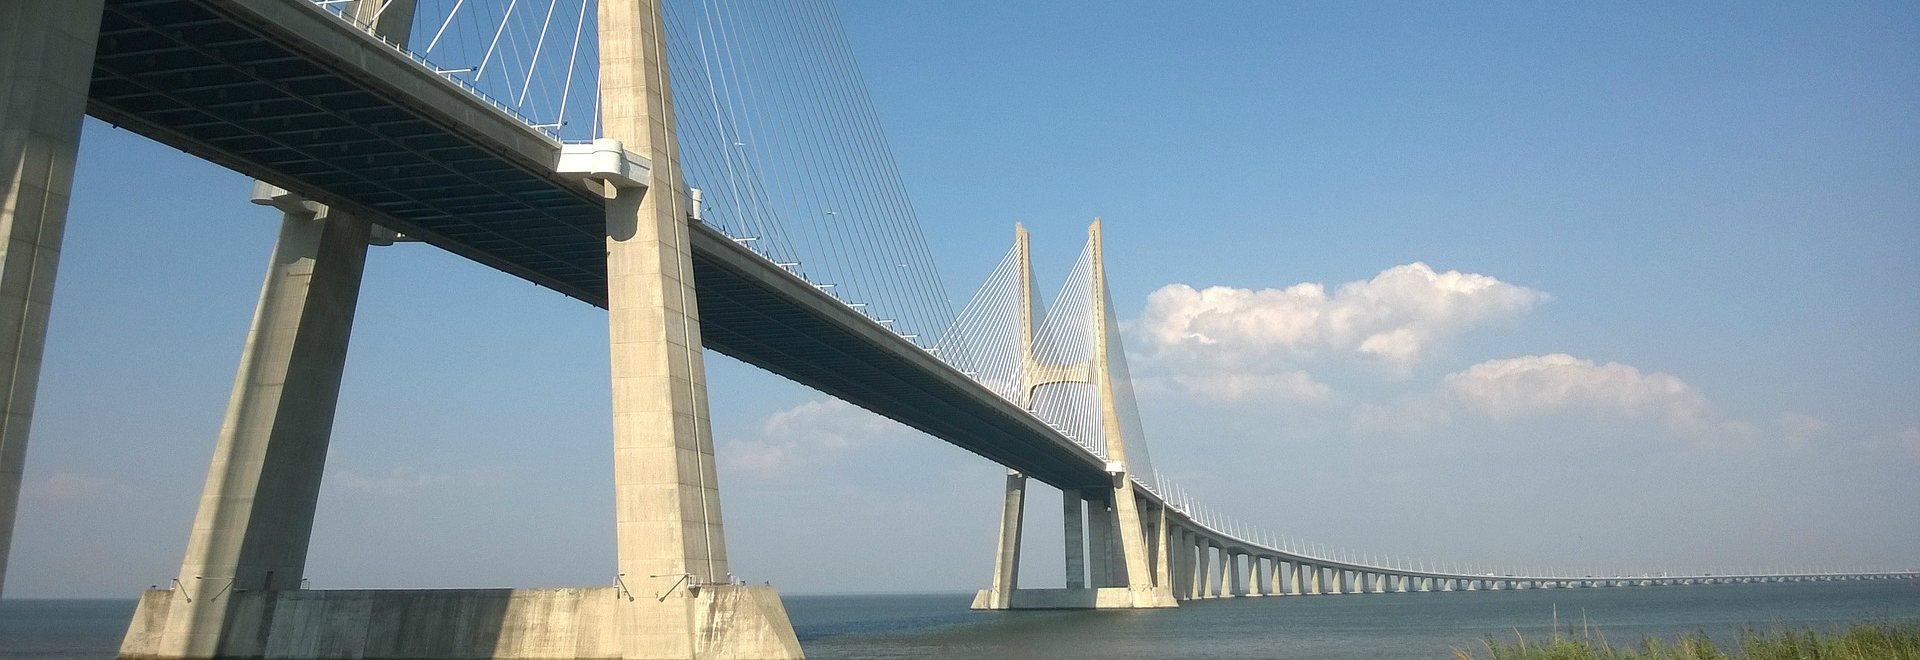 Bridge Vasco da Gama